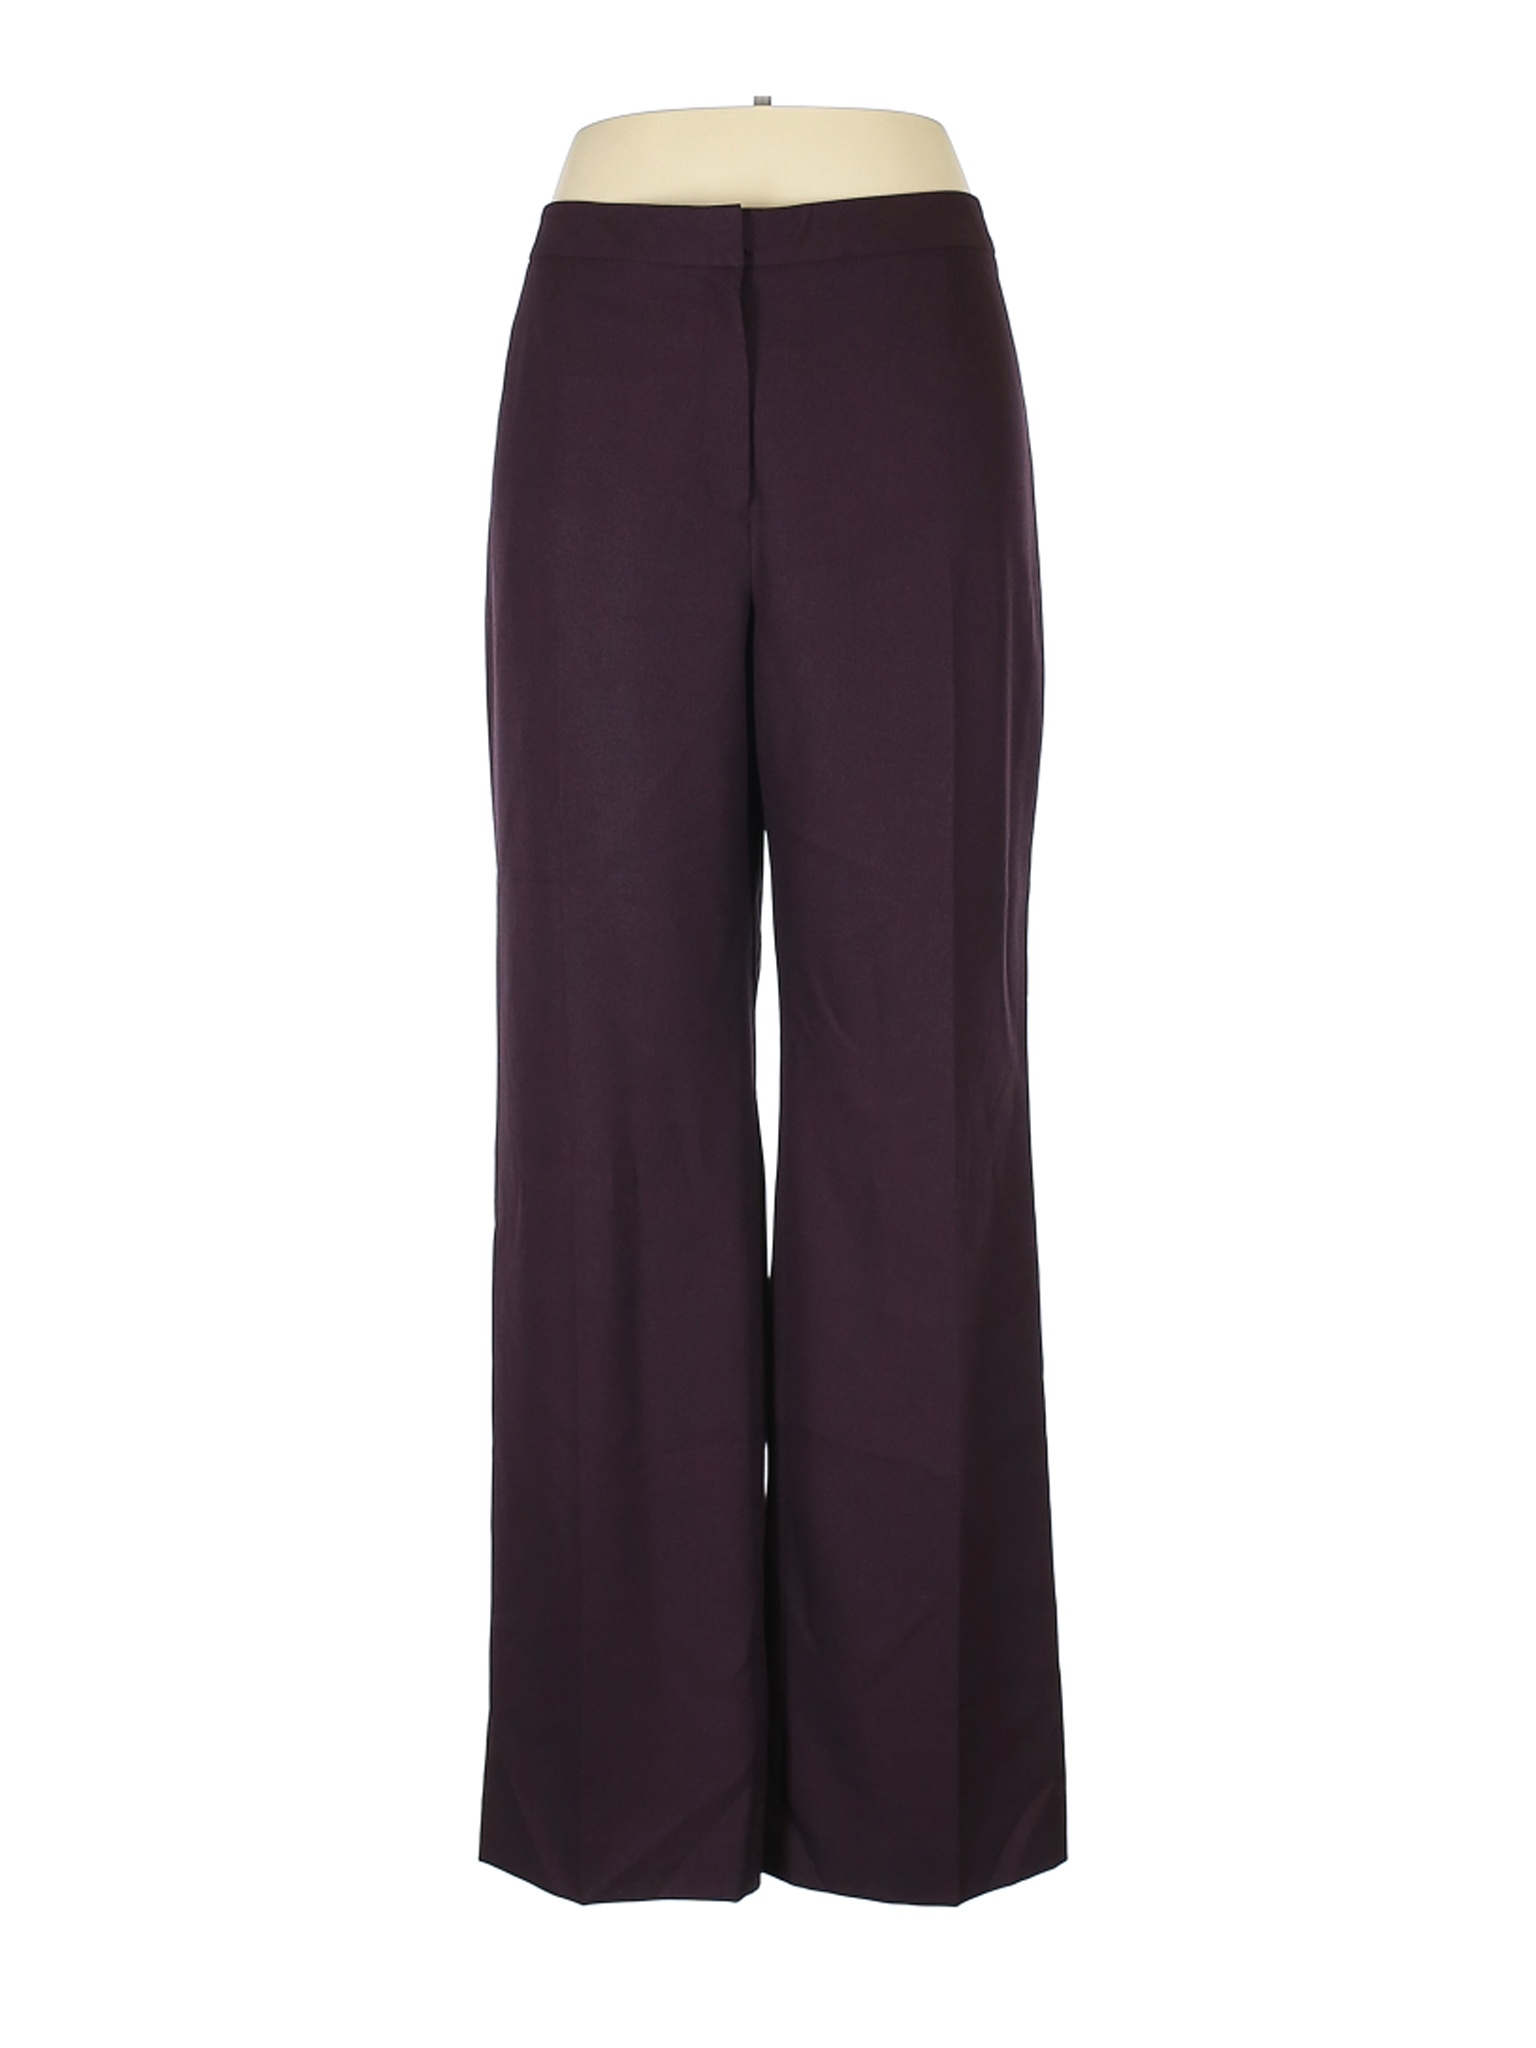 Le Suit Separates Women Purple Dress Pants 16 | eBay